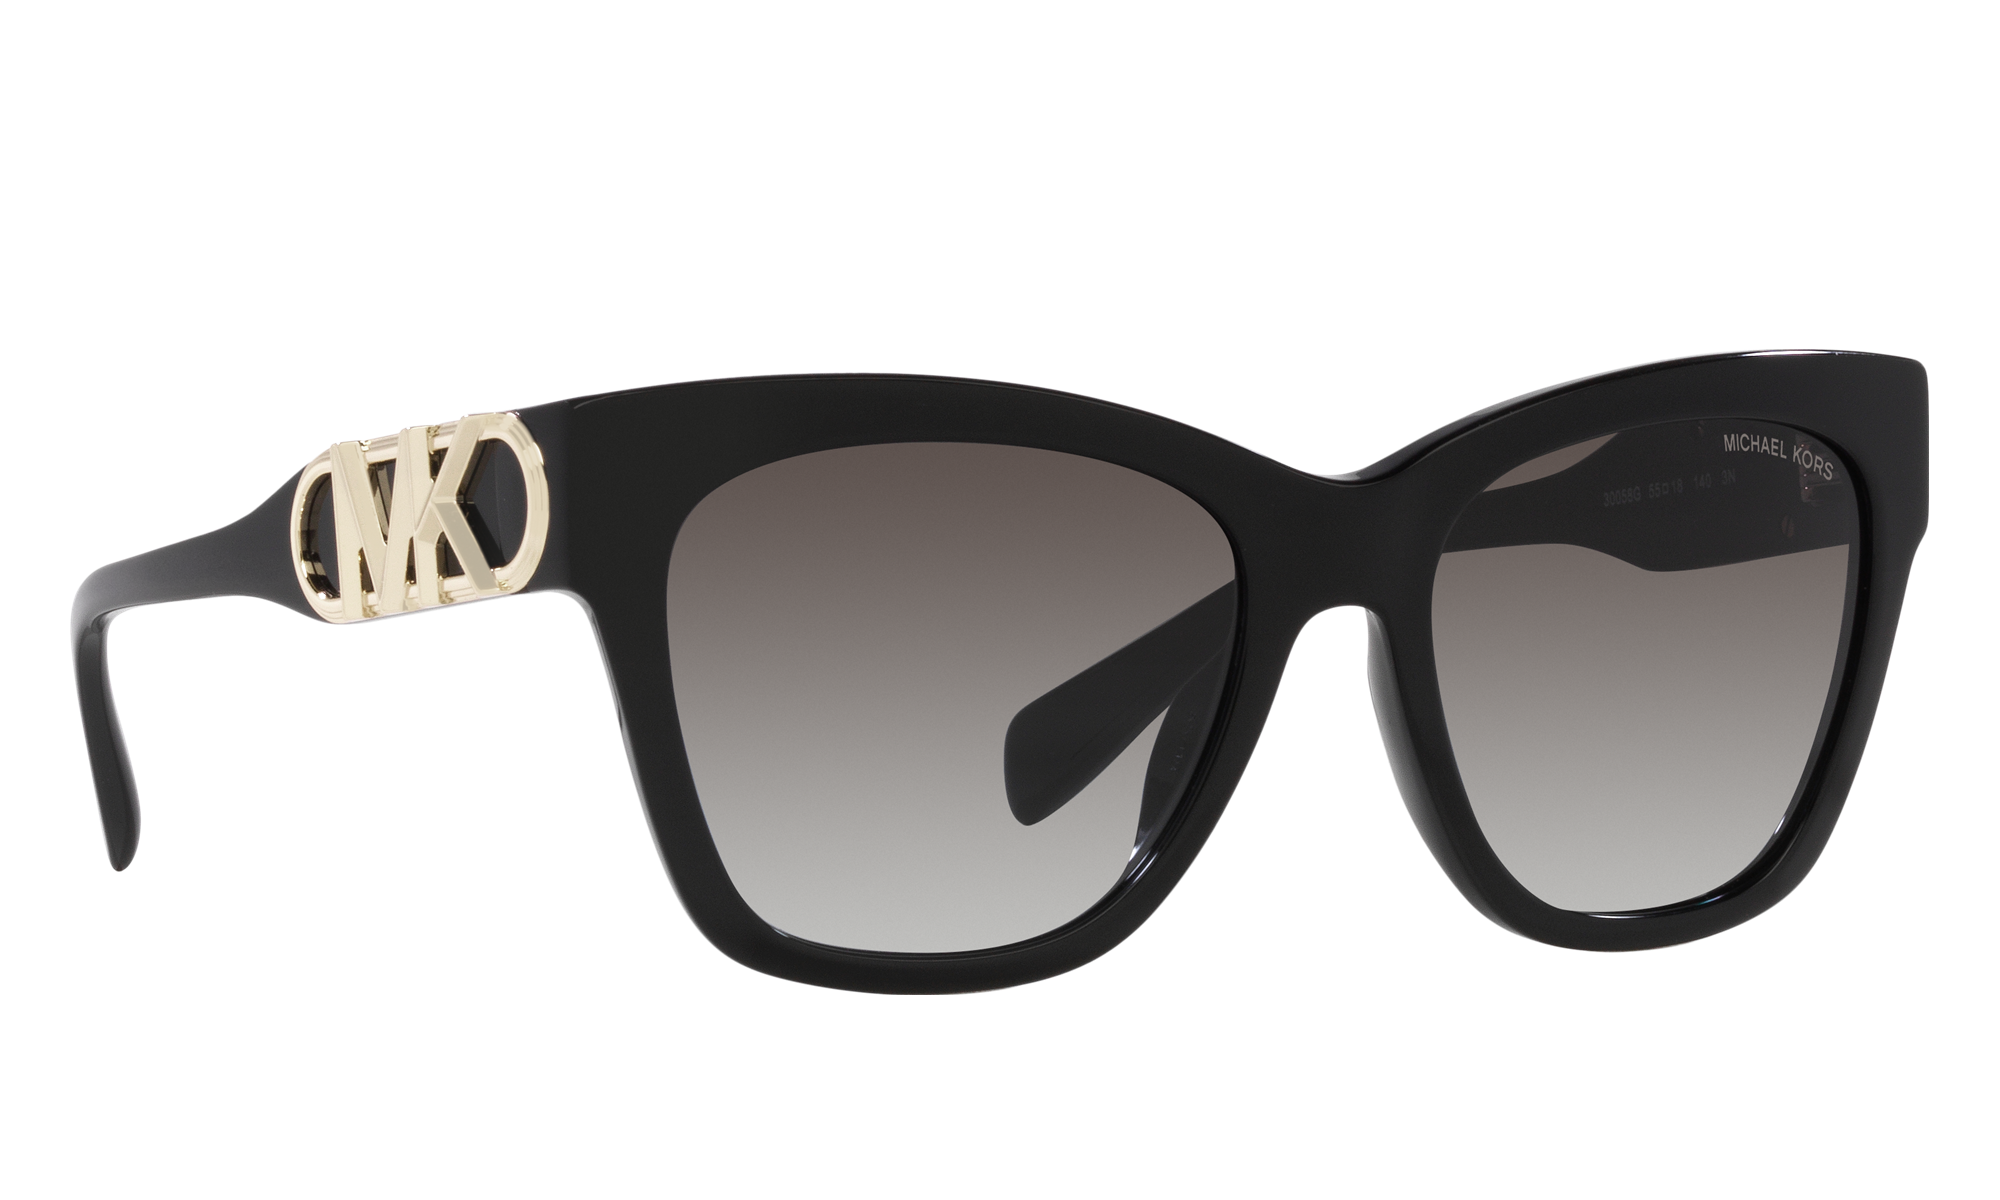 Michael Kors 3in1 Sicily 56mm Pilot Optical Frames  Sunglasses   Nordstromrack